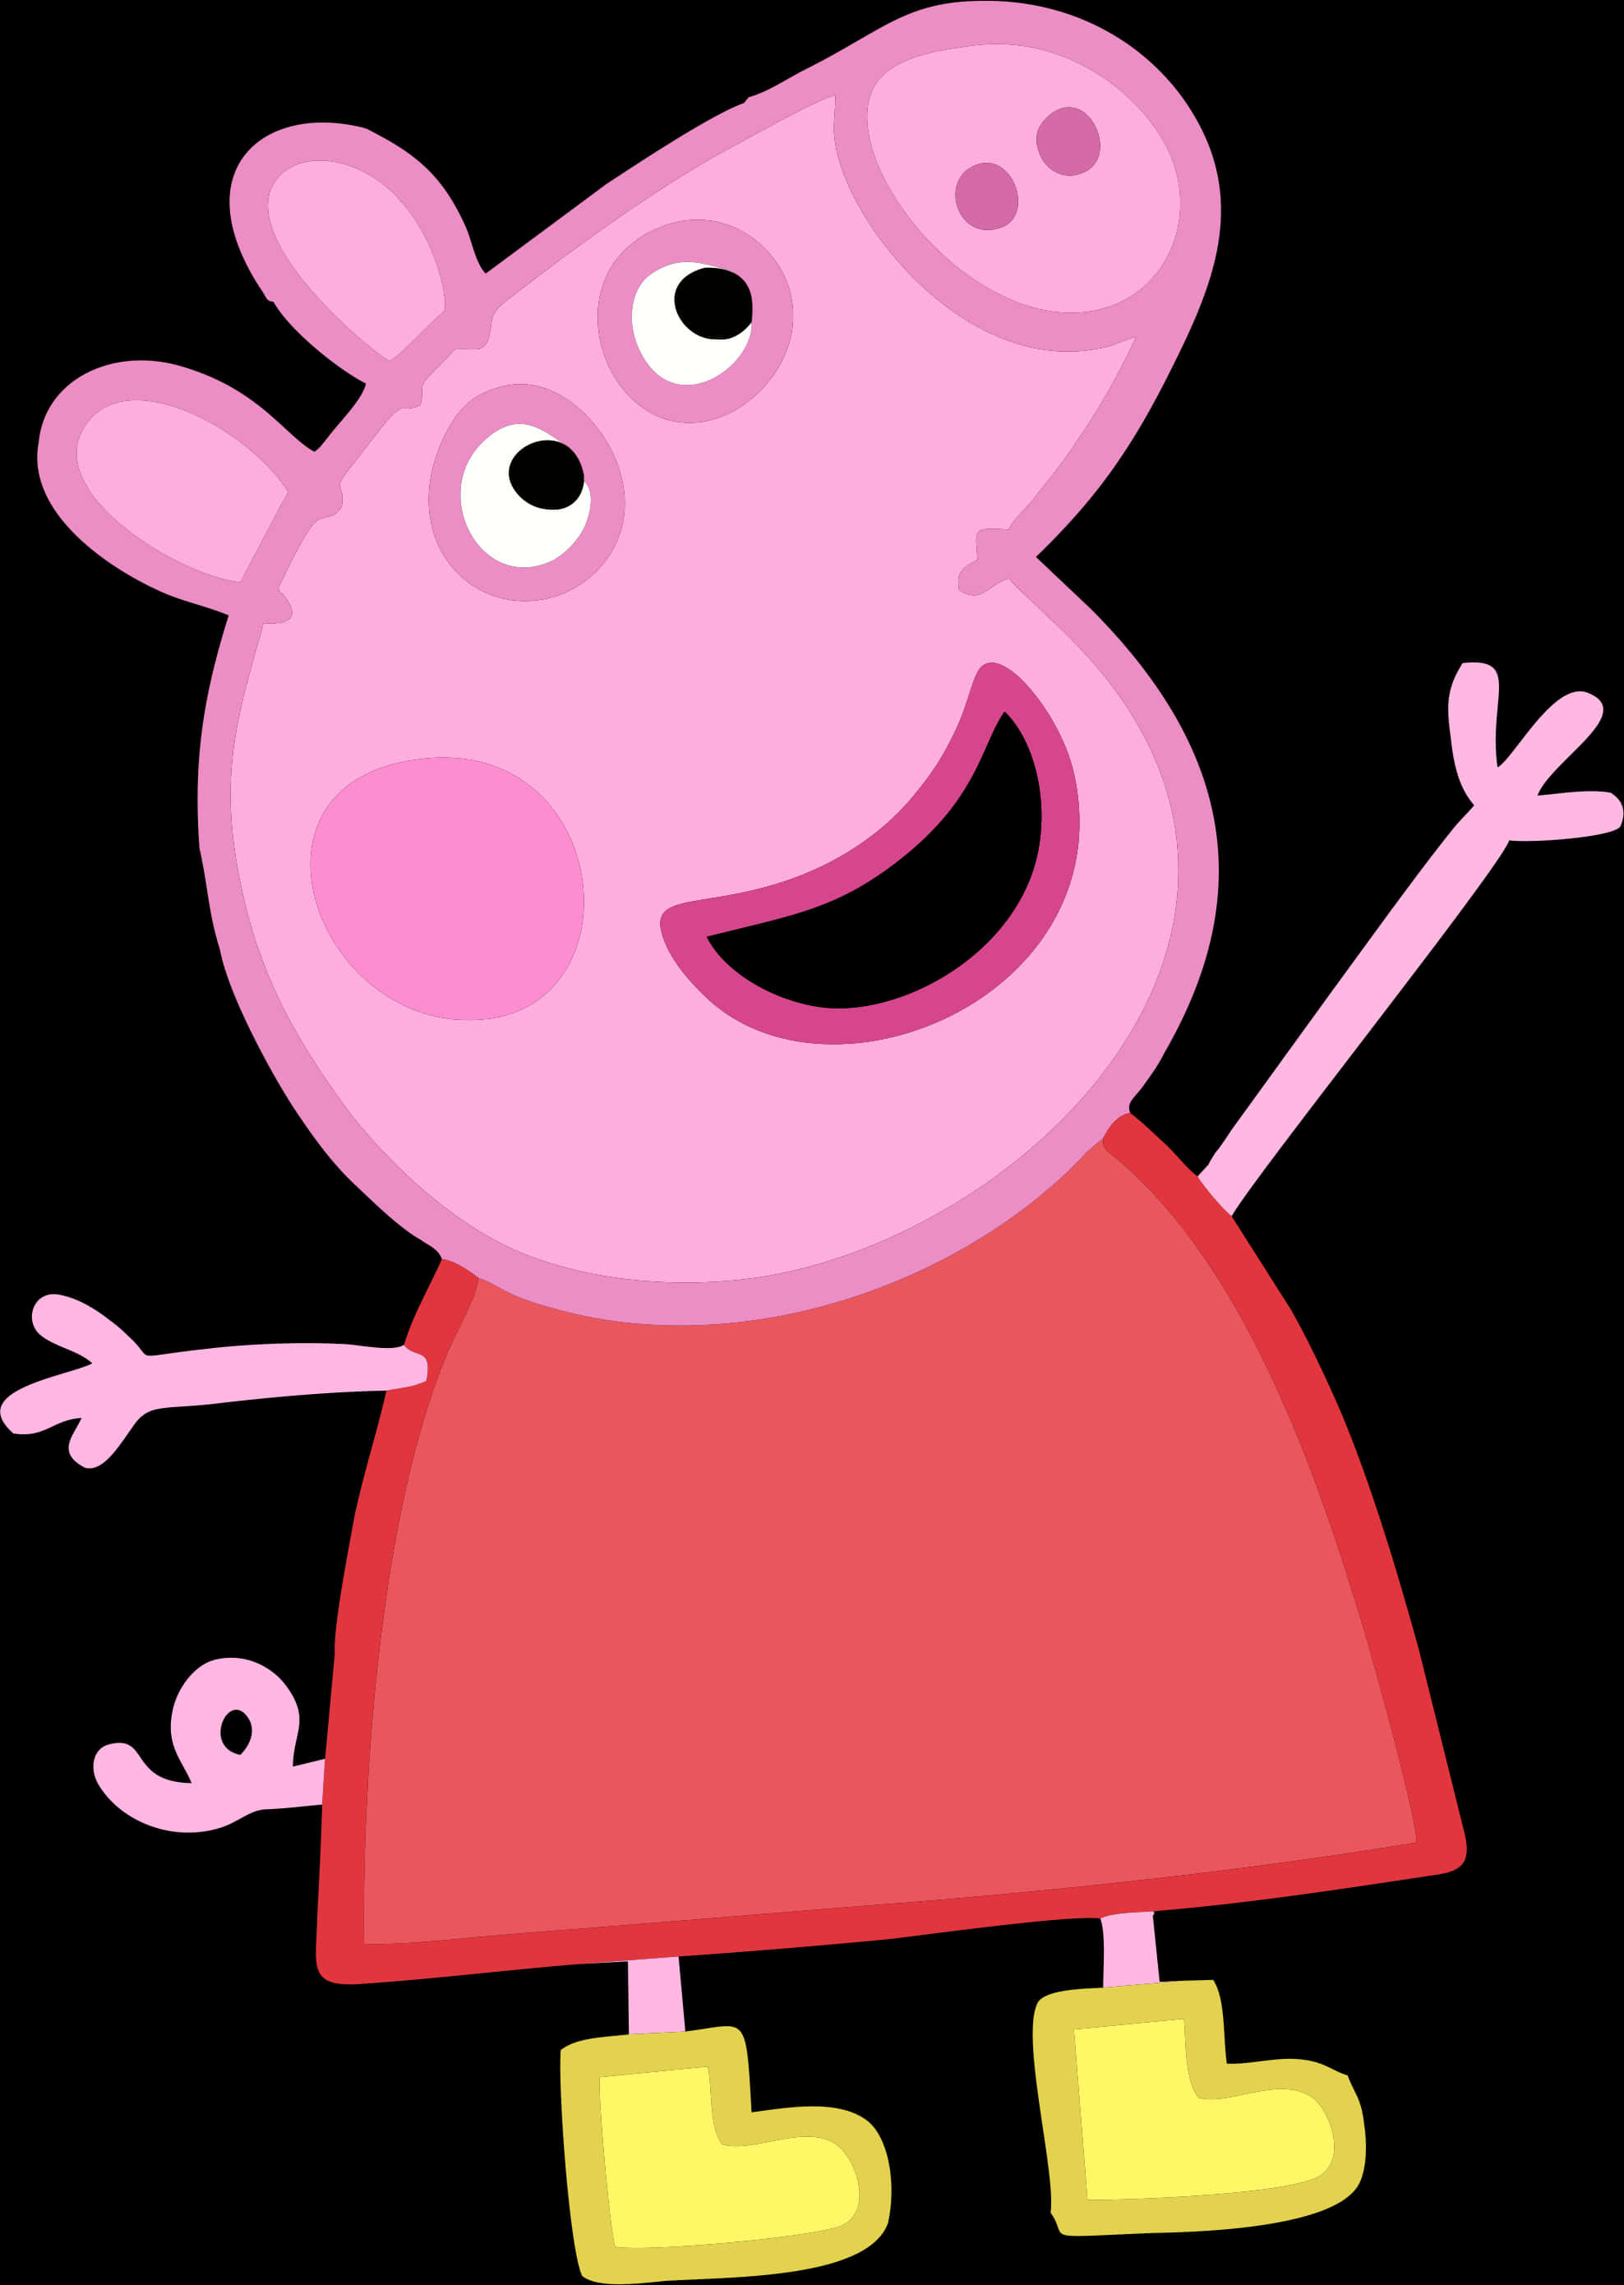 Peppa Pig Cartoon Character PNG